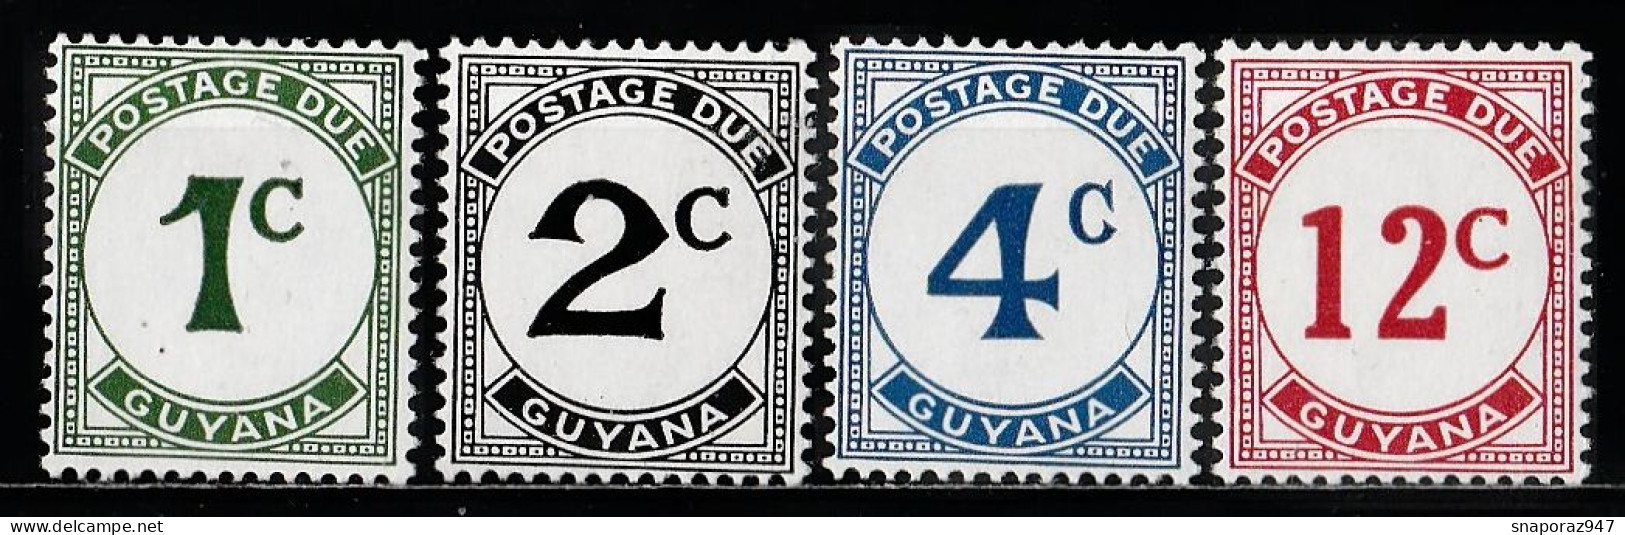 1973 Guyana Timbre Taxe Set MNH** Ta5 - Guyana (1966-...)